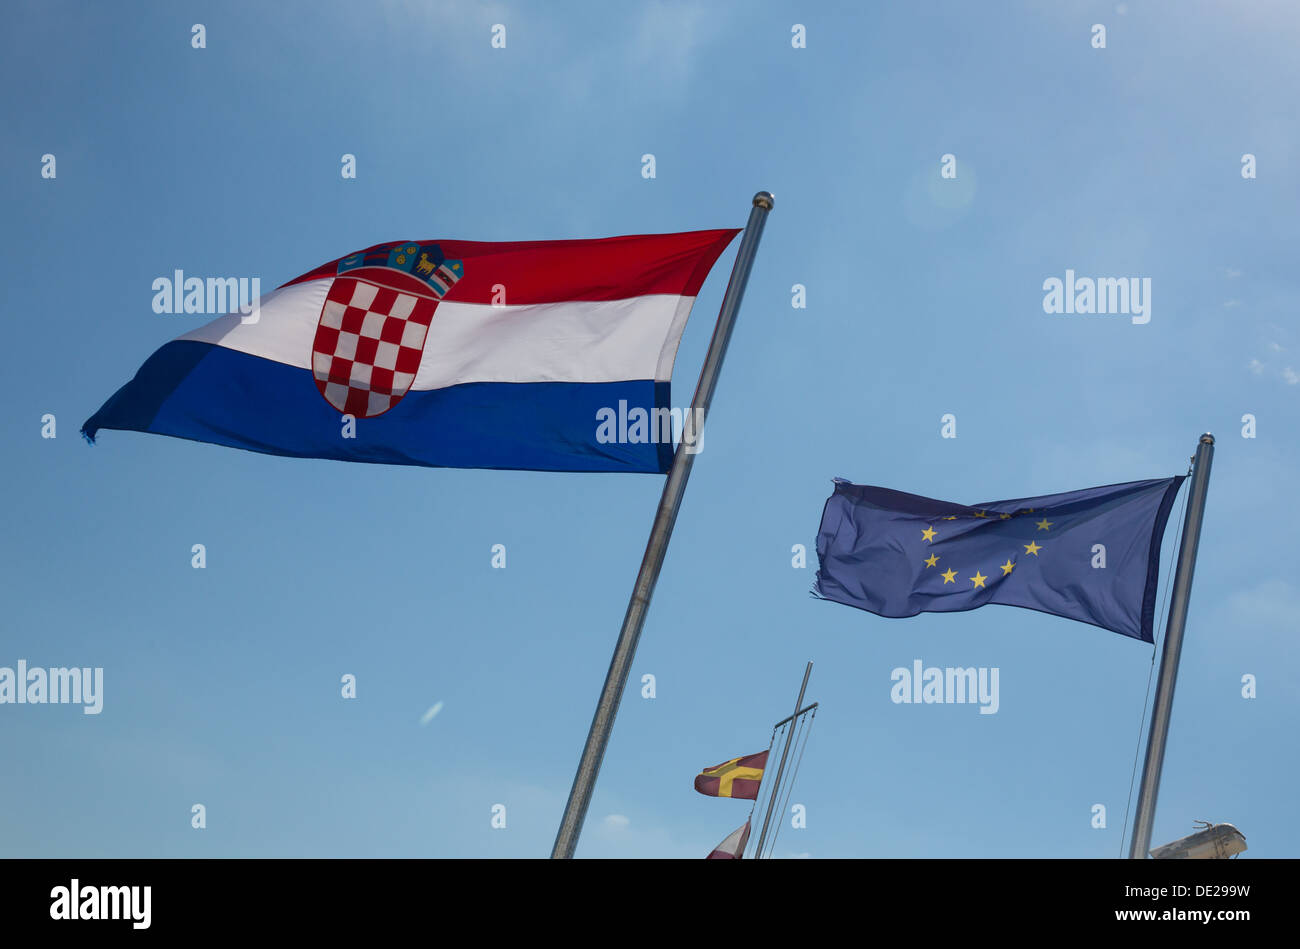 L'admission de la Croatie, les drapeaux de l'UE et de la Croatie en agitant au port de Rovinj, Croatie, symbole, image symbolique, Banque D'Images